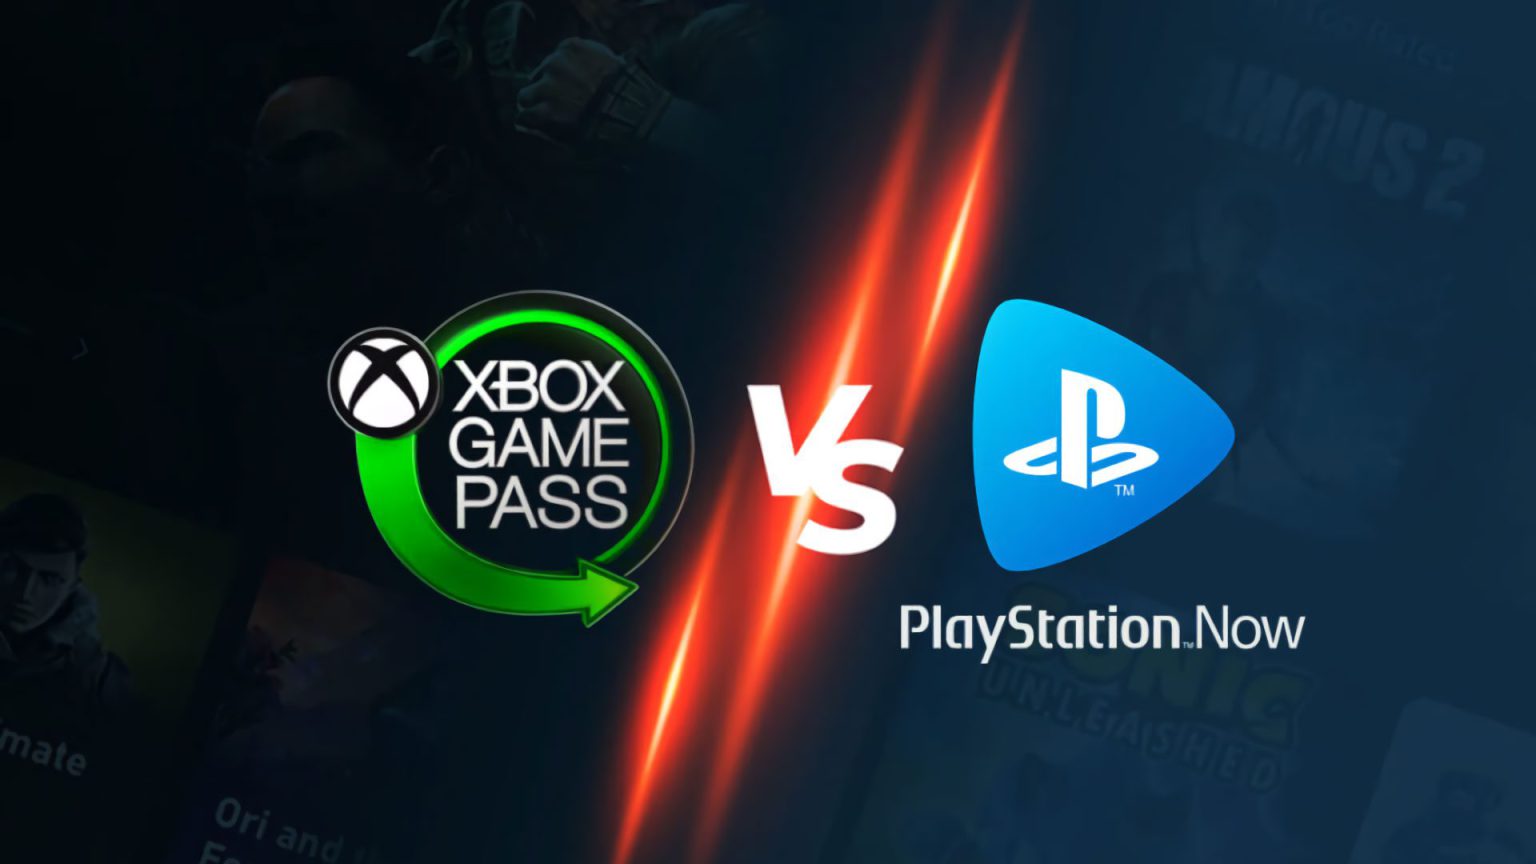 Hacemos un repaso al tema de la semana, la filtración del nuevo servicio de suscripción de Sony Playstation y sus similitudes con Xbox Game Pass.